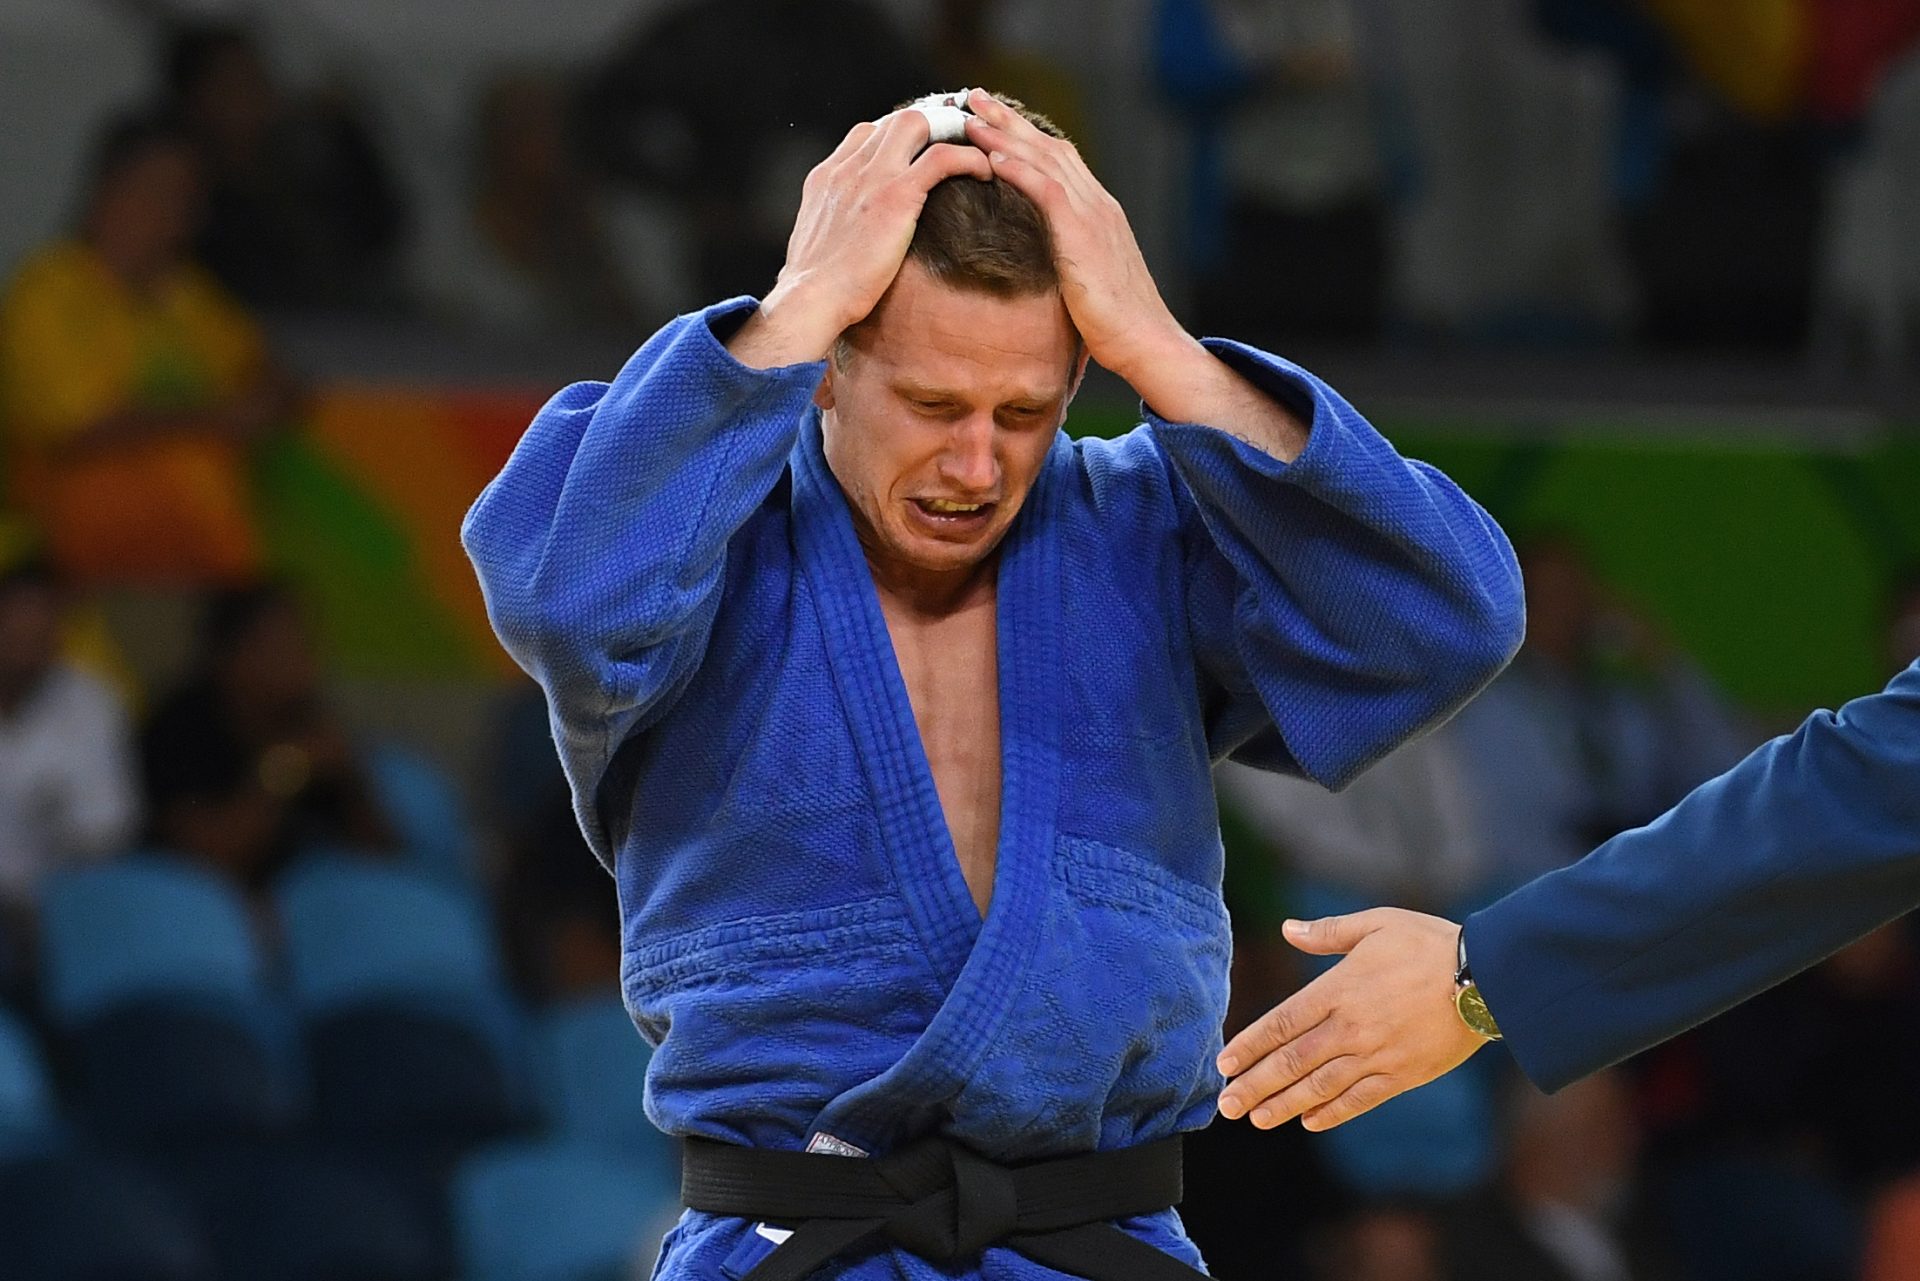 Judoca belga medalhado nos Jogos Olímpicos assaltado no Rio